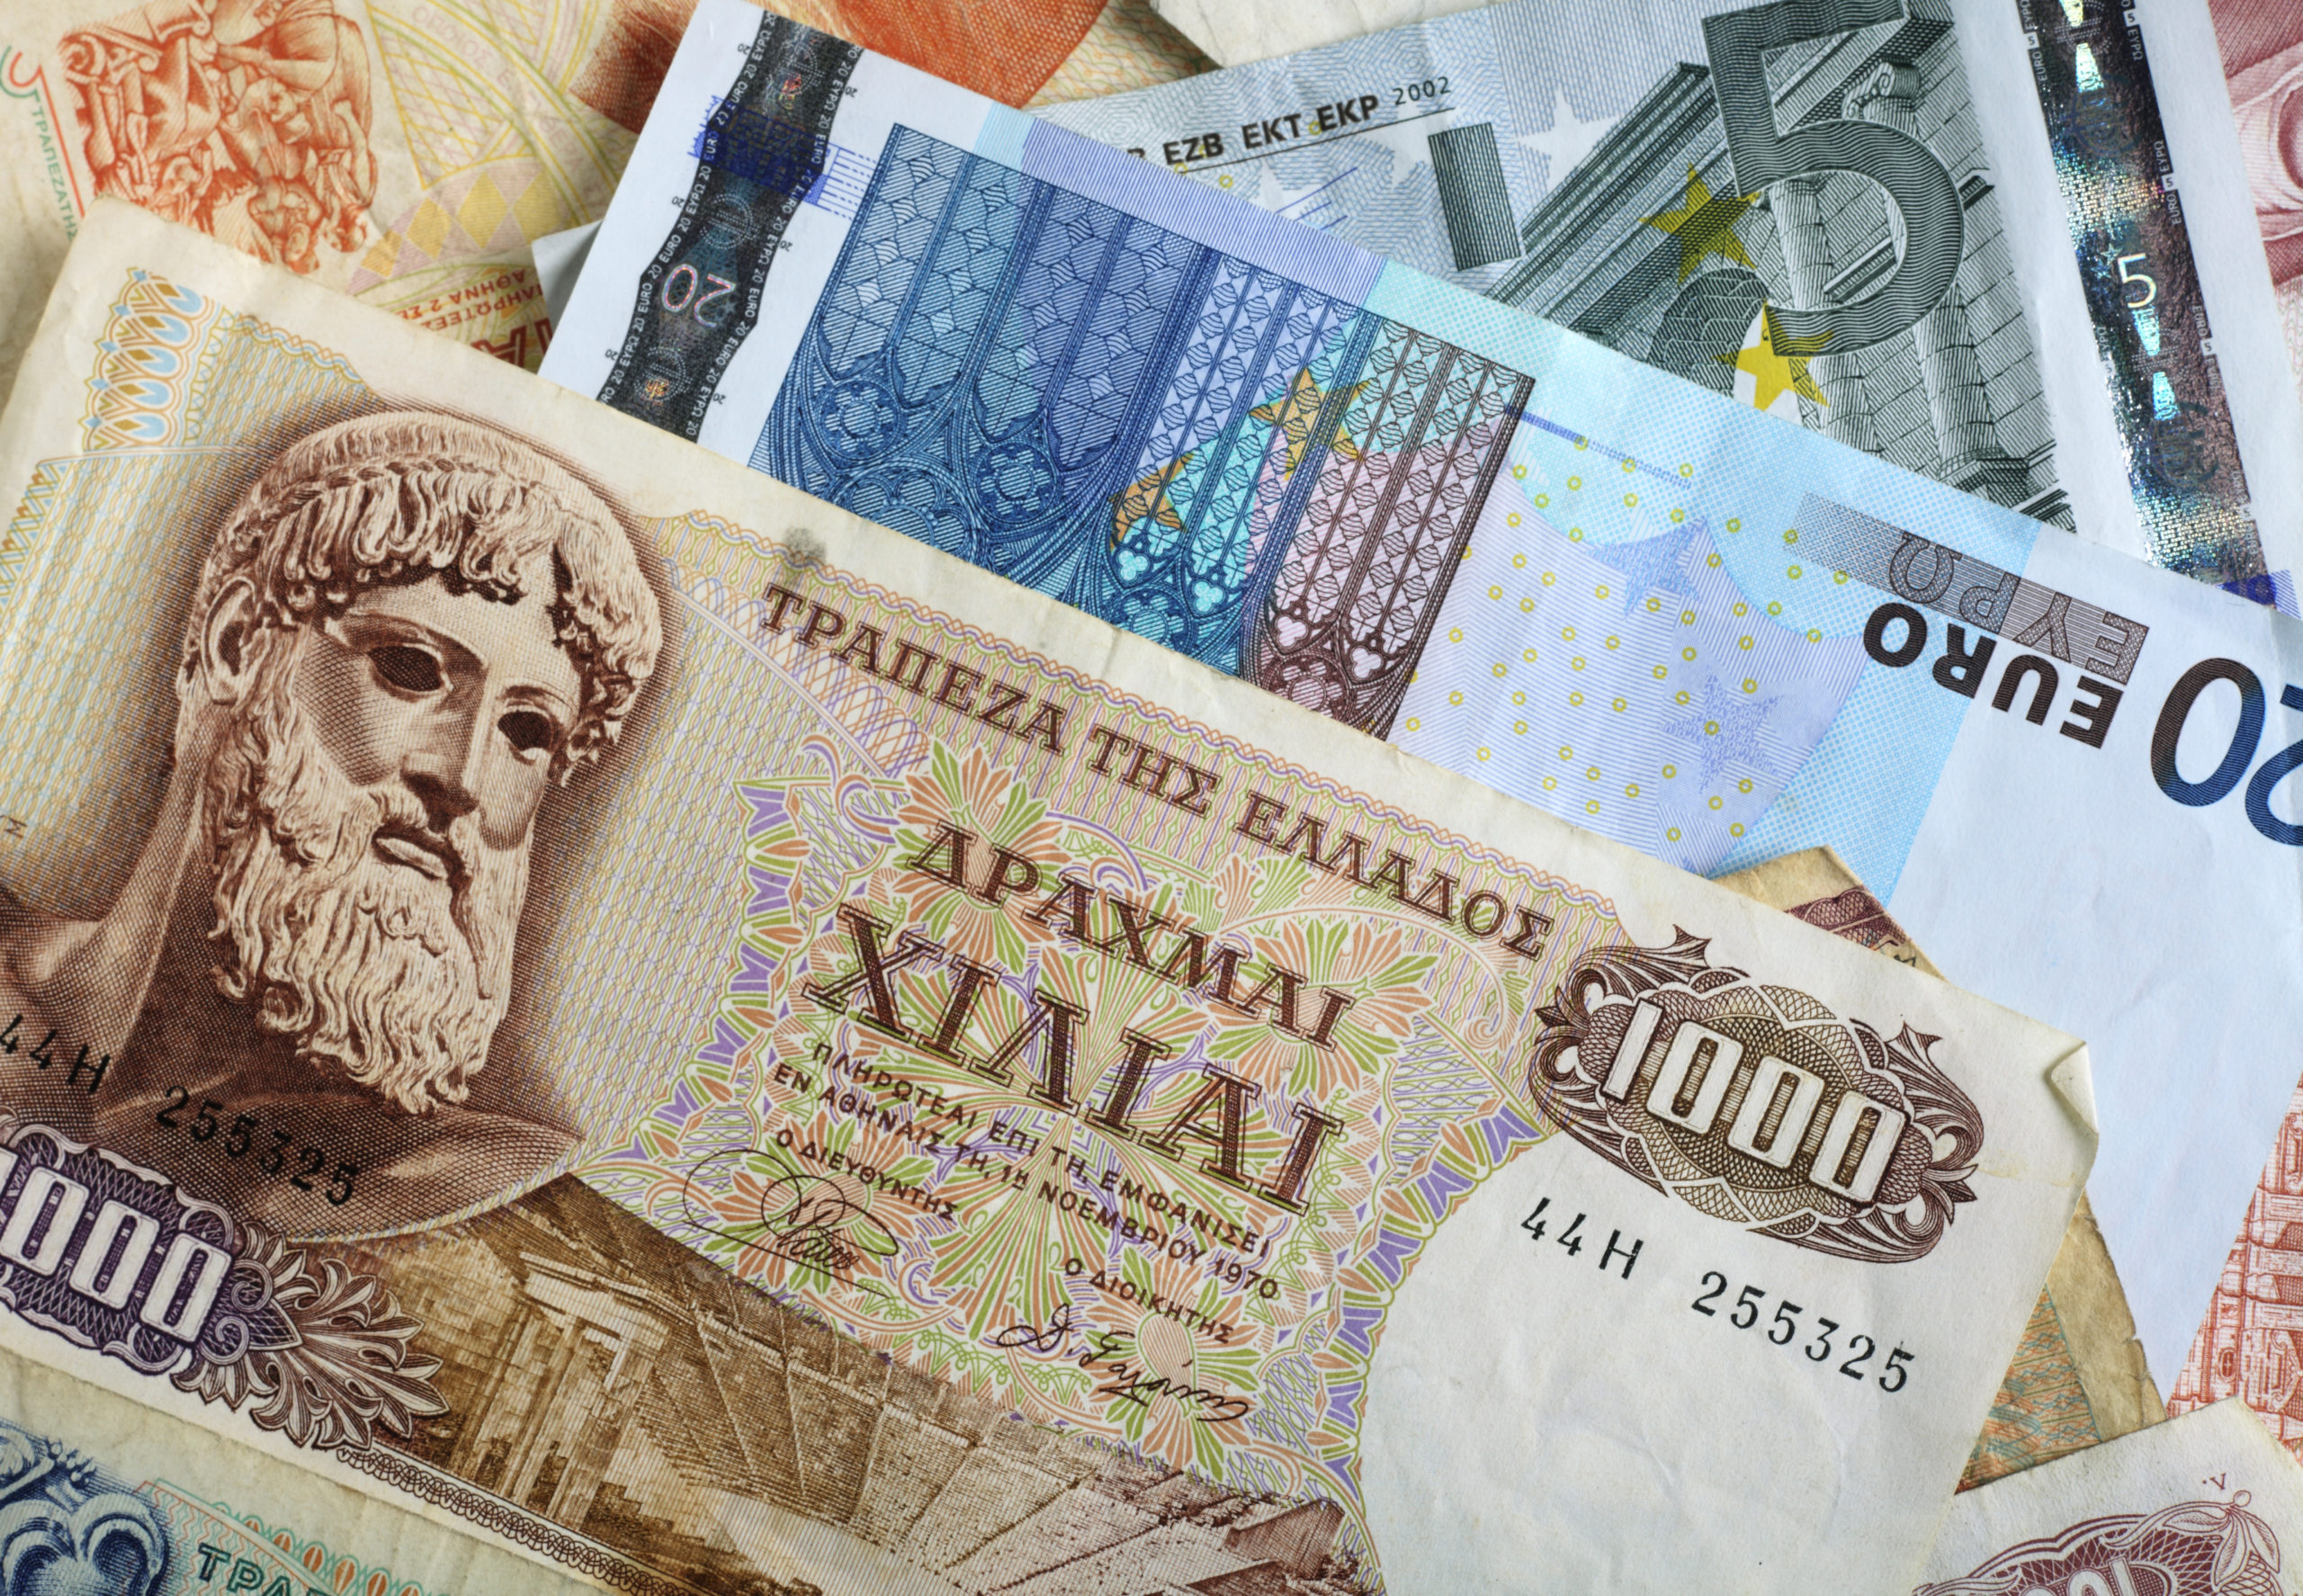 Everyday economics and drachma